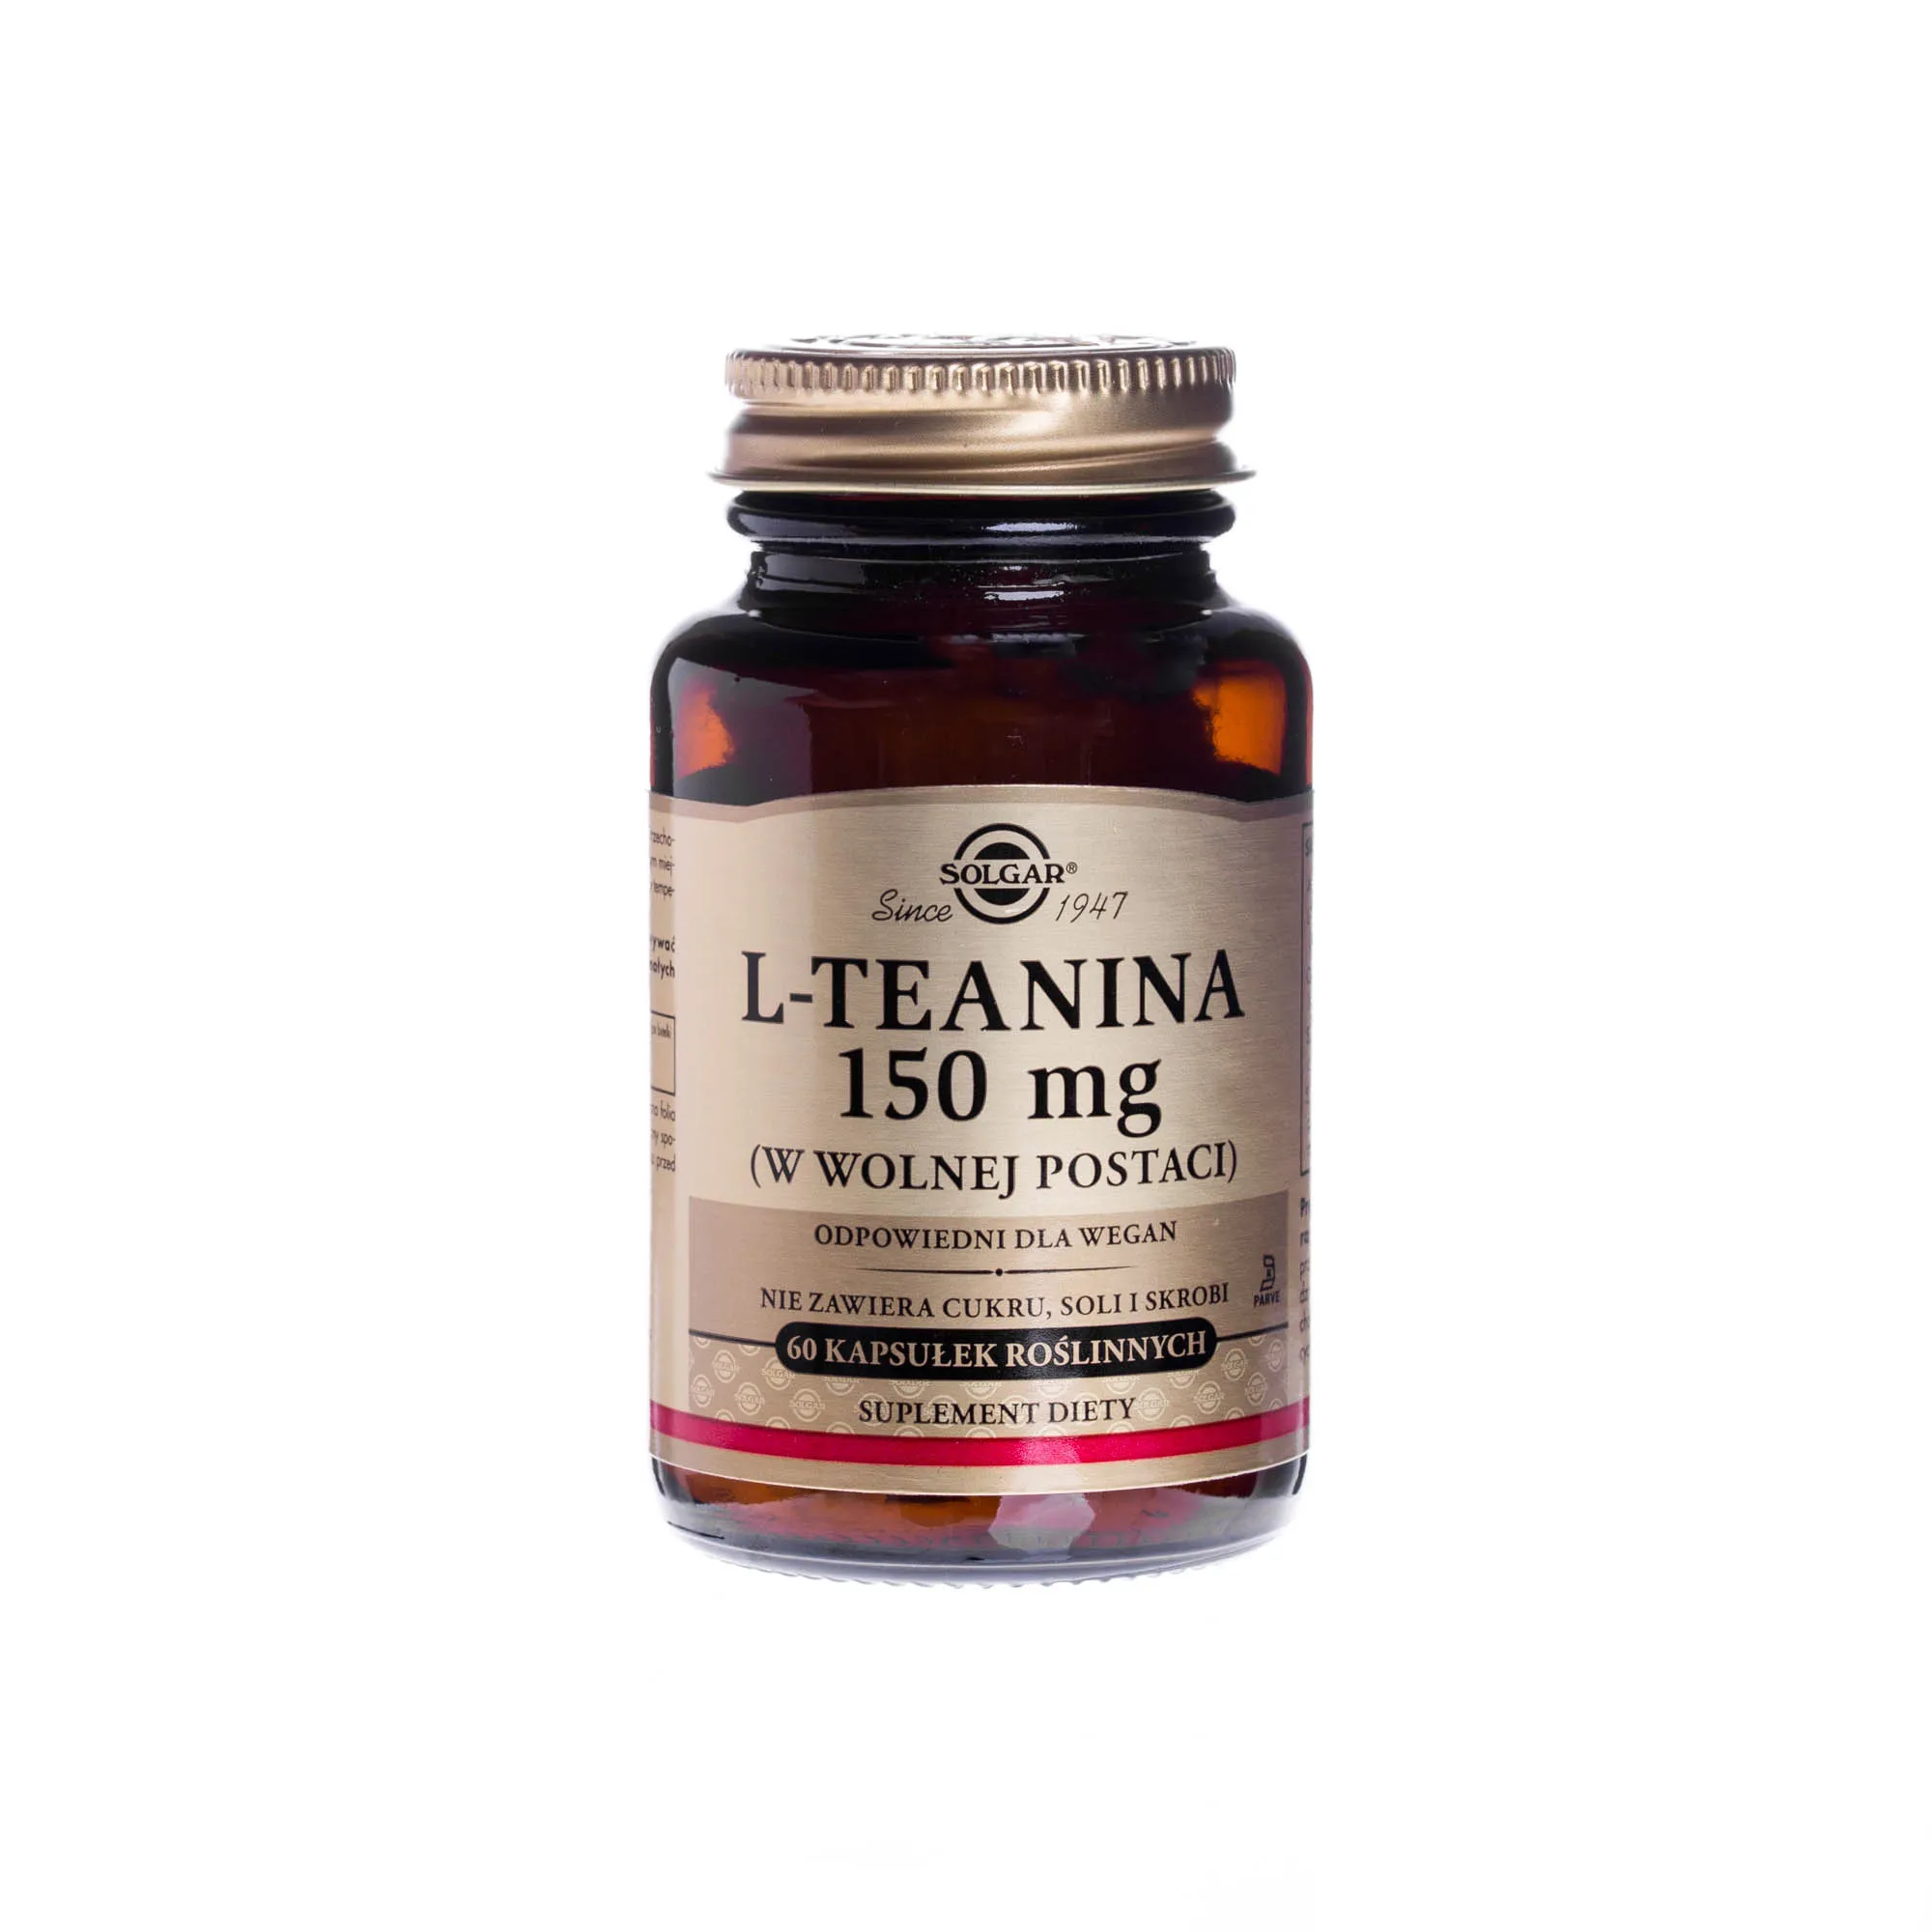 Solgar L-Teanina 150 mg w wolnej postaci, suplement diety, 60 kapsułek roślinnych 